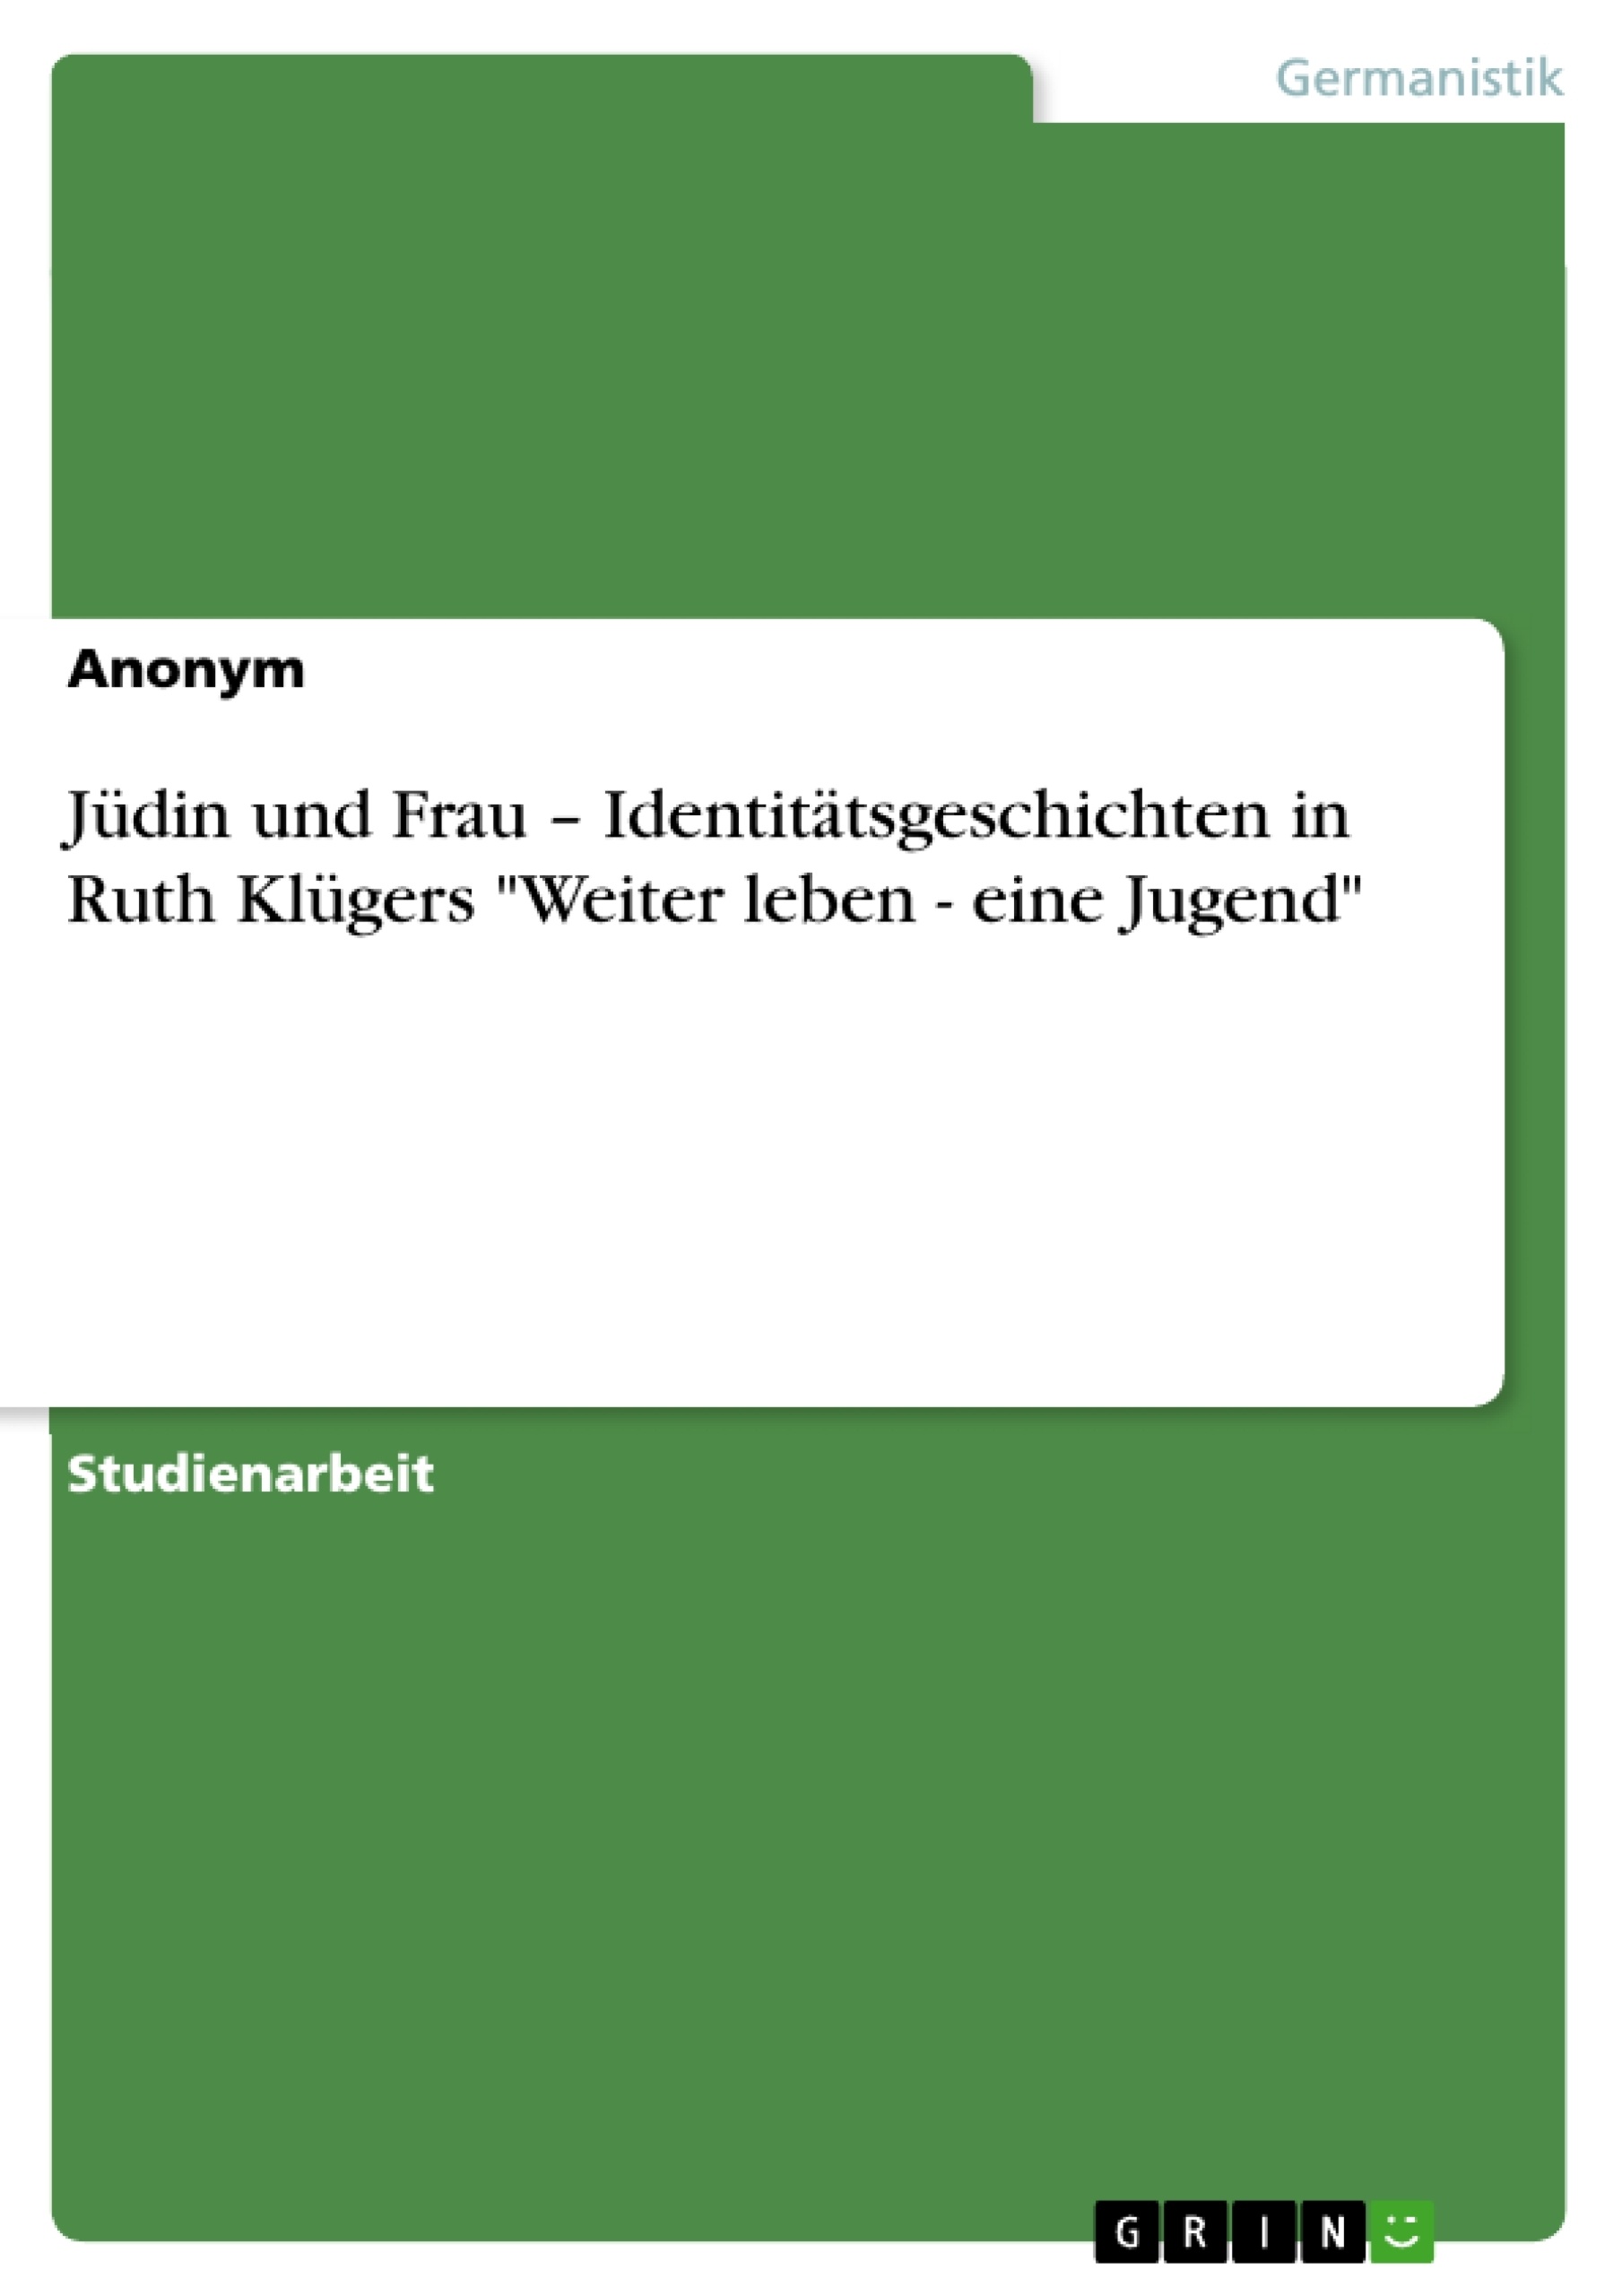 Título: Jüdin und Frau – Identitätsgeschichten in Ruth Klügers "Weiter leben - eine Jugend"